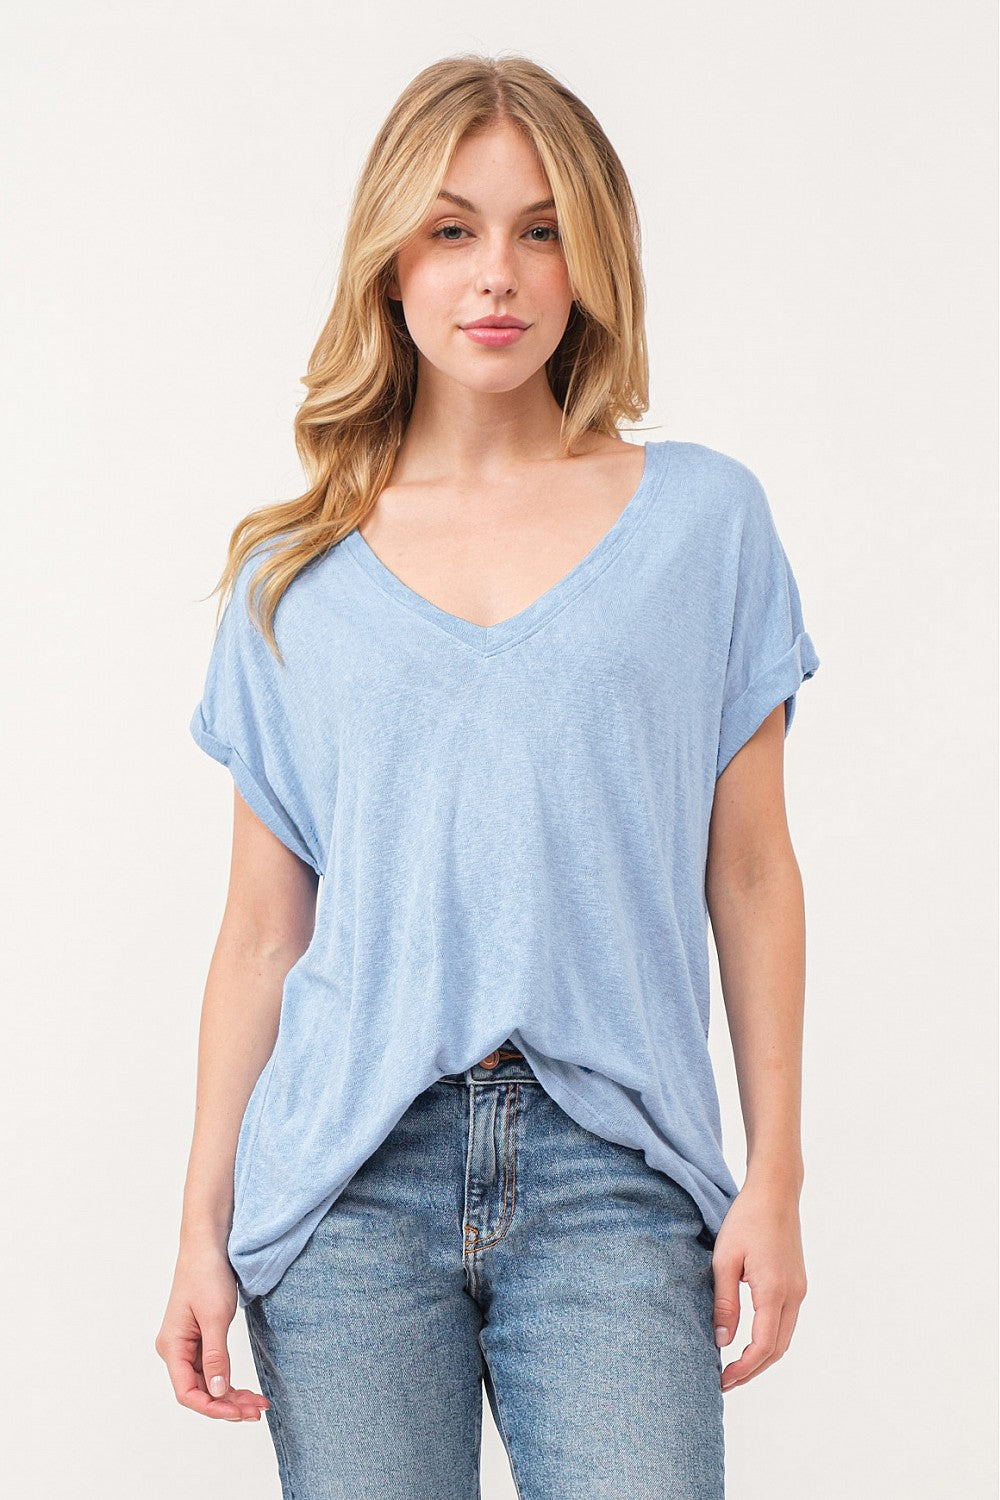 Liz T-Shirt - Marine Blue